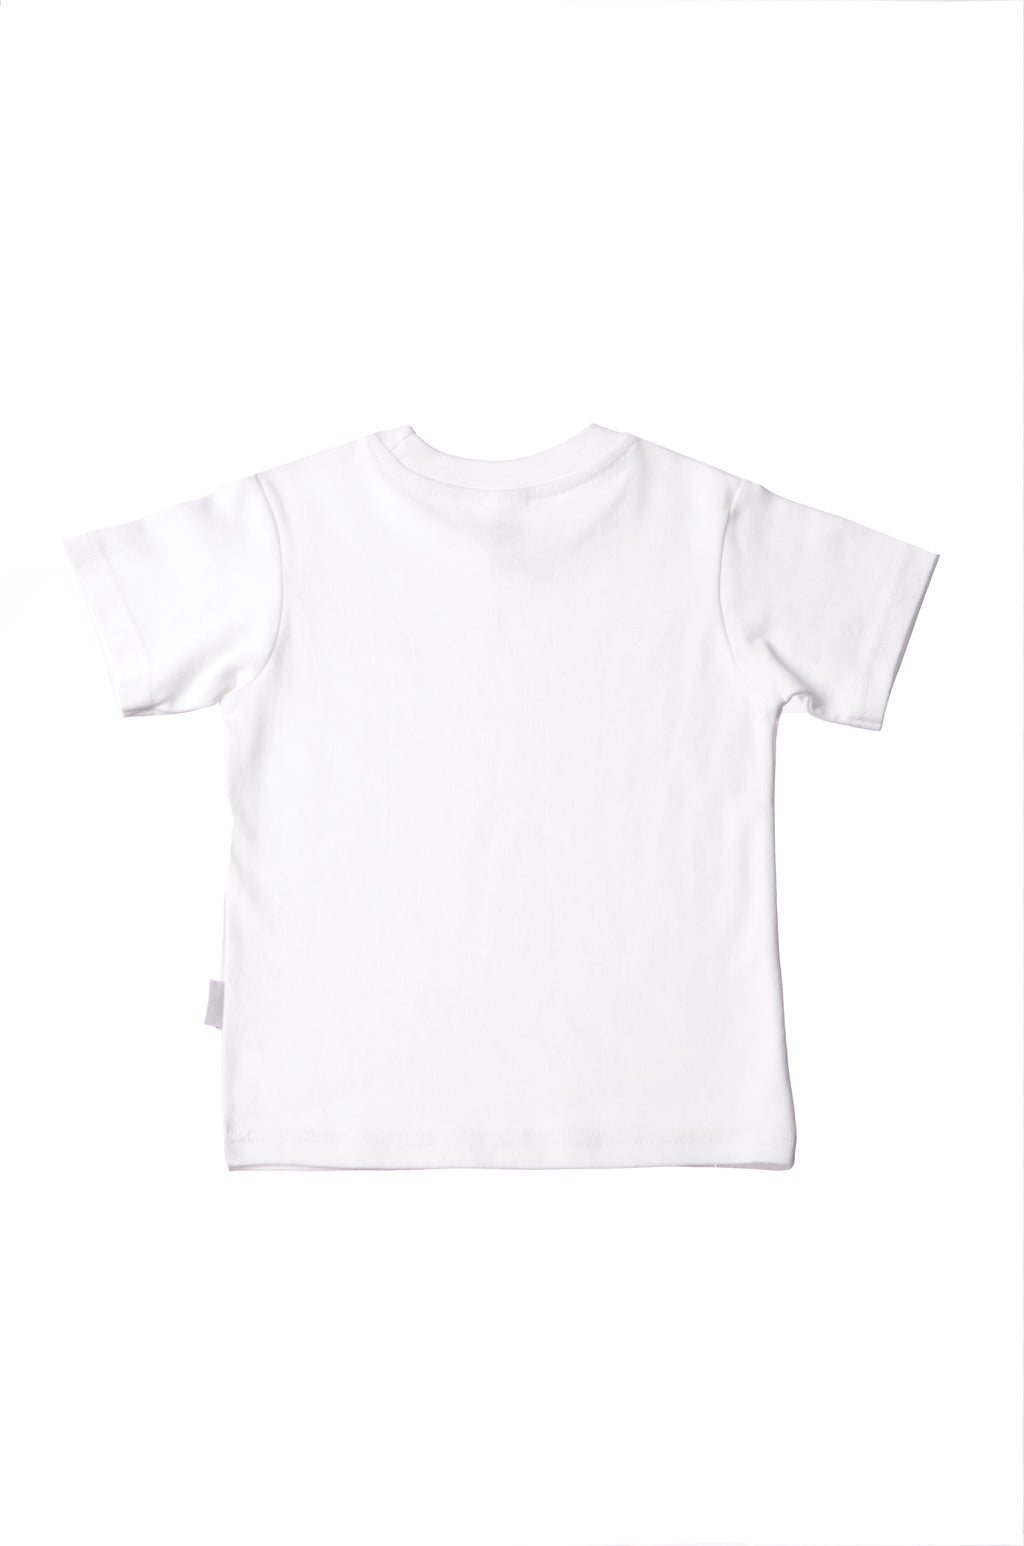 T-Shirt für Liliput von Kleinkind – Baby Liliput und